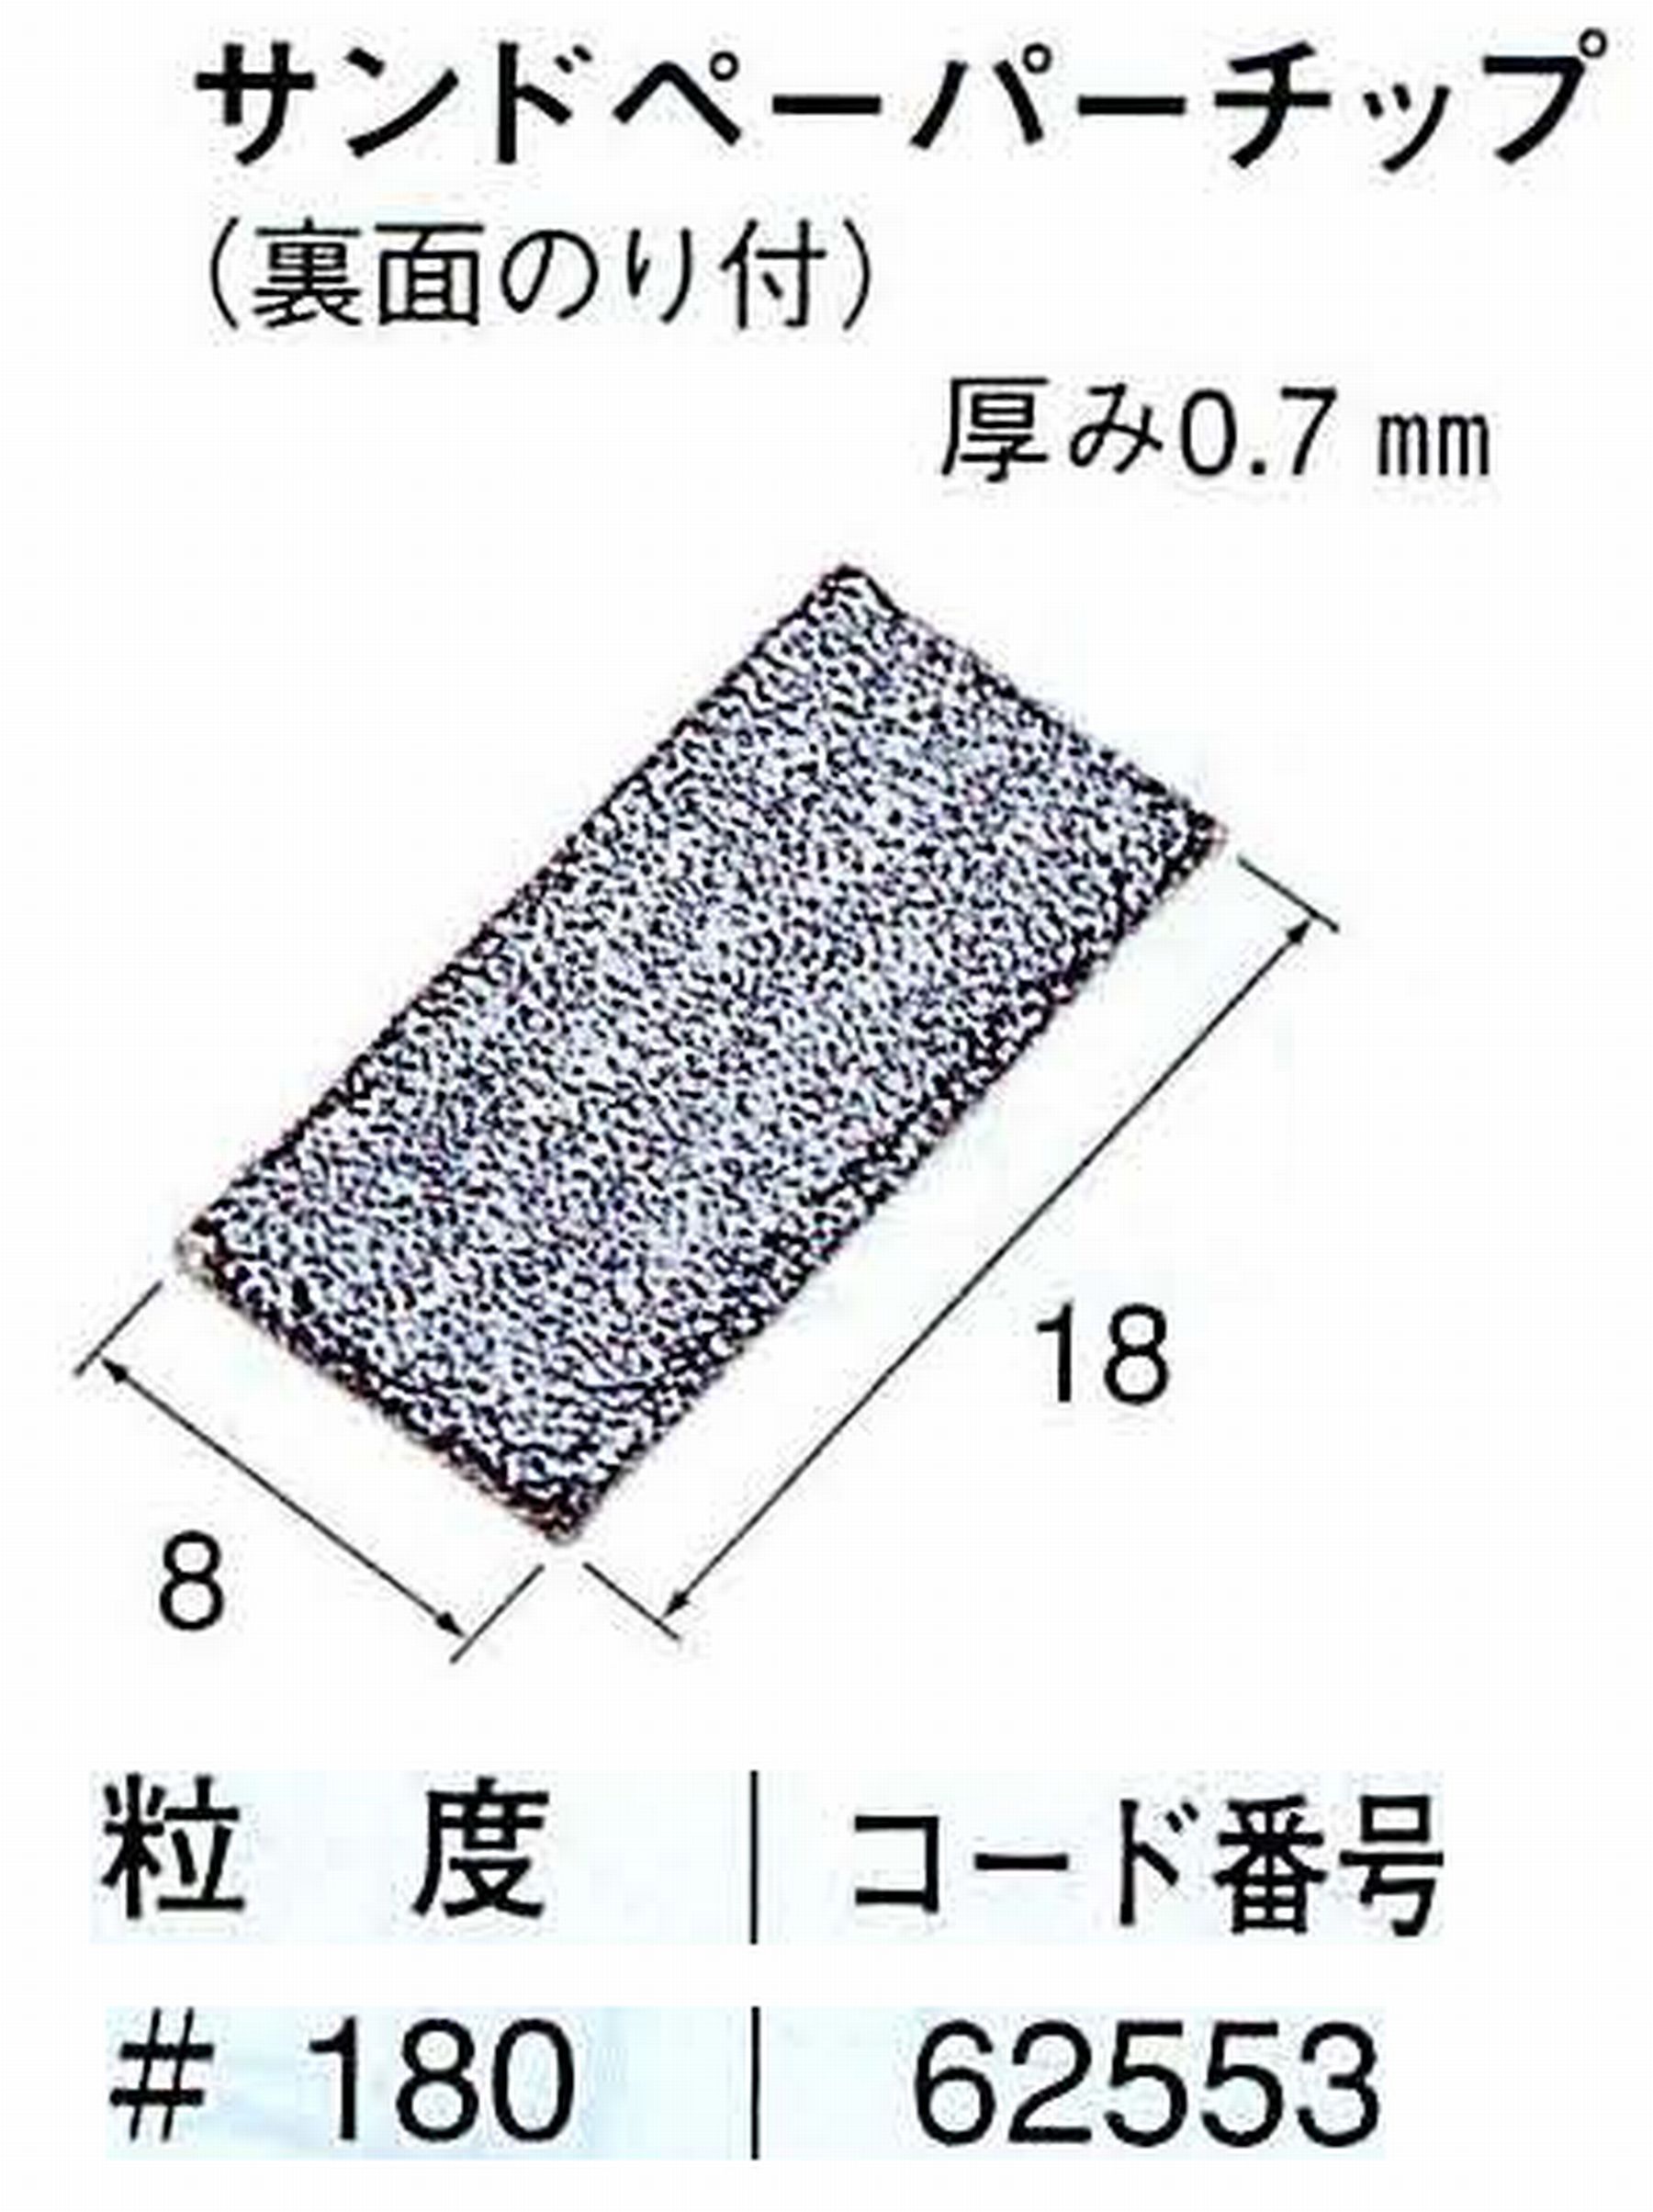 ナカニシ/NAKANISHI ハンディタイプ 電動・エアーヤスリ(往復動) ラスター専用工具 研磨チップ(フラットホルダ、角パットホルダ用) 62553